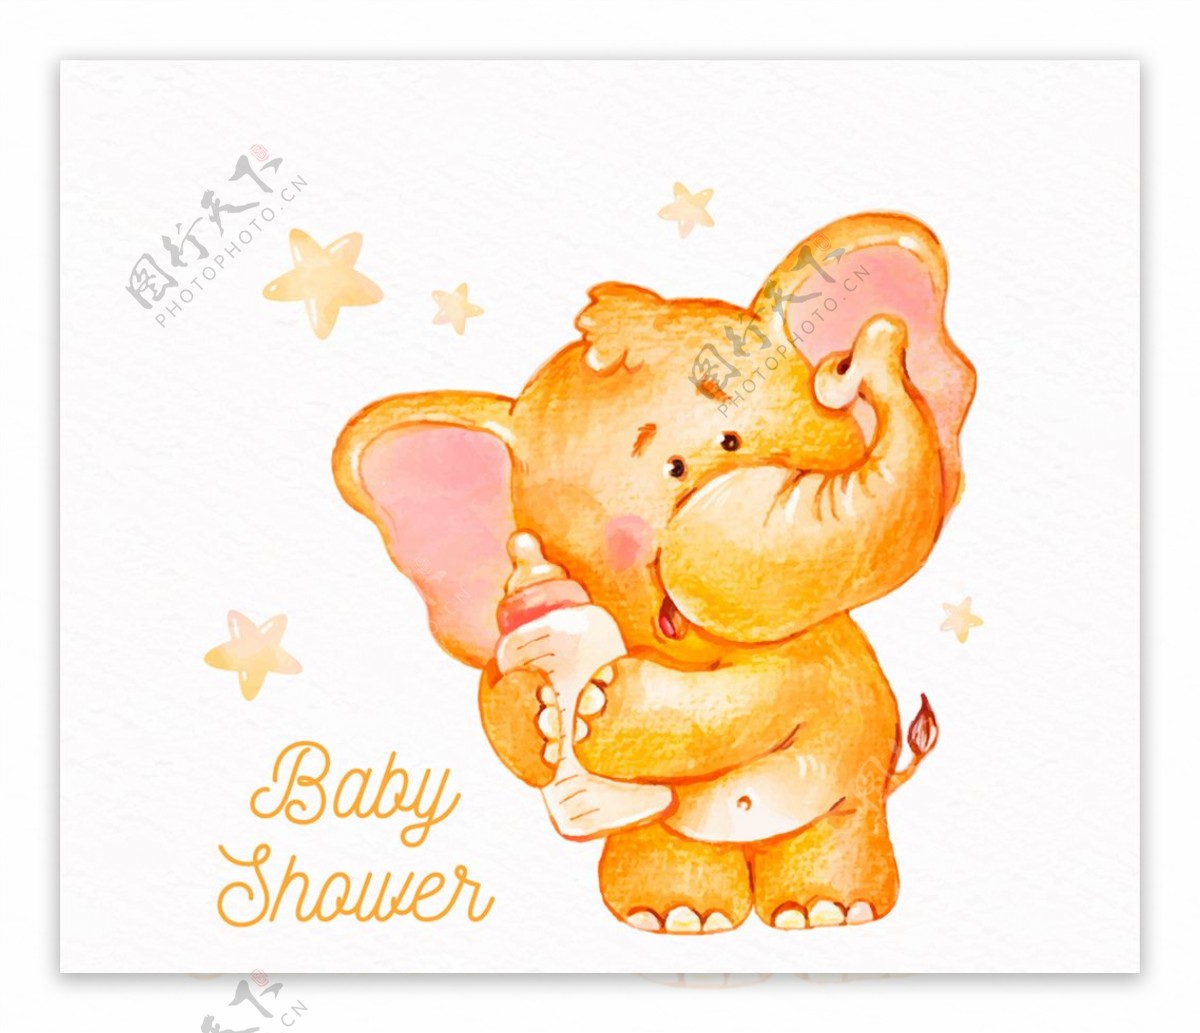 彩绘橘色大象迎婴海报